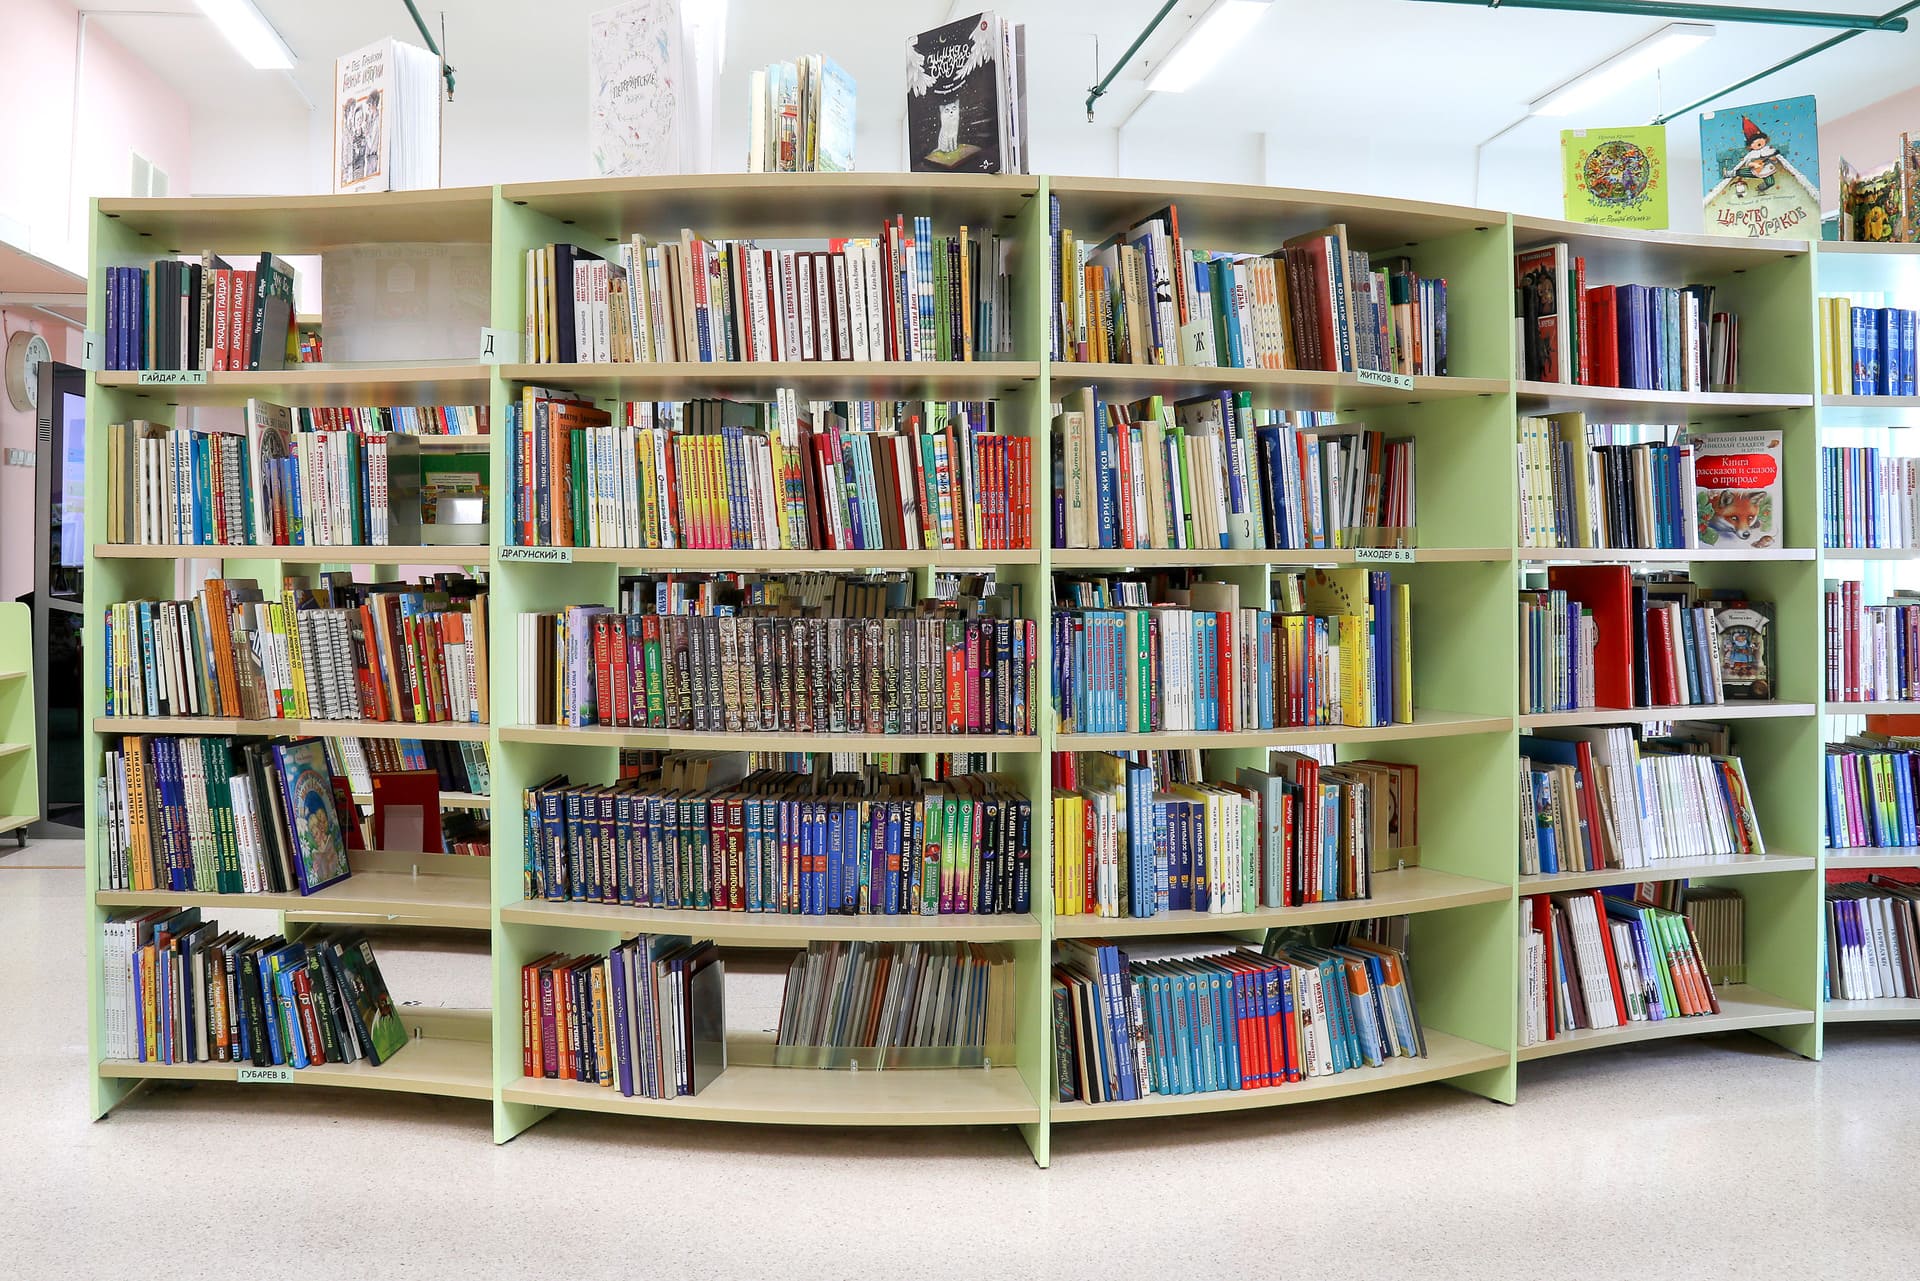 Название стеллажей. Стол для читального зала. Название стеллажей в библиотеке. Оформление читального зала библиотеки. Книжные полки в младшей школе.